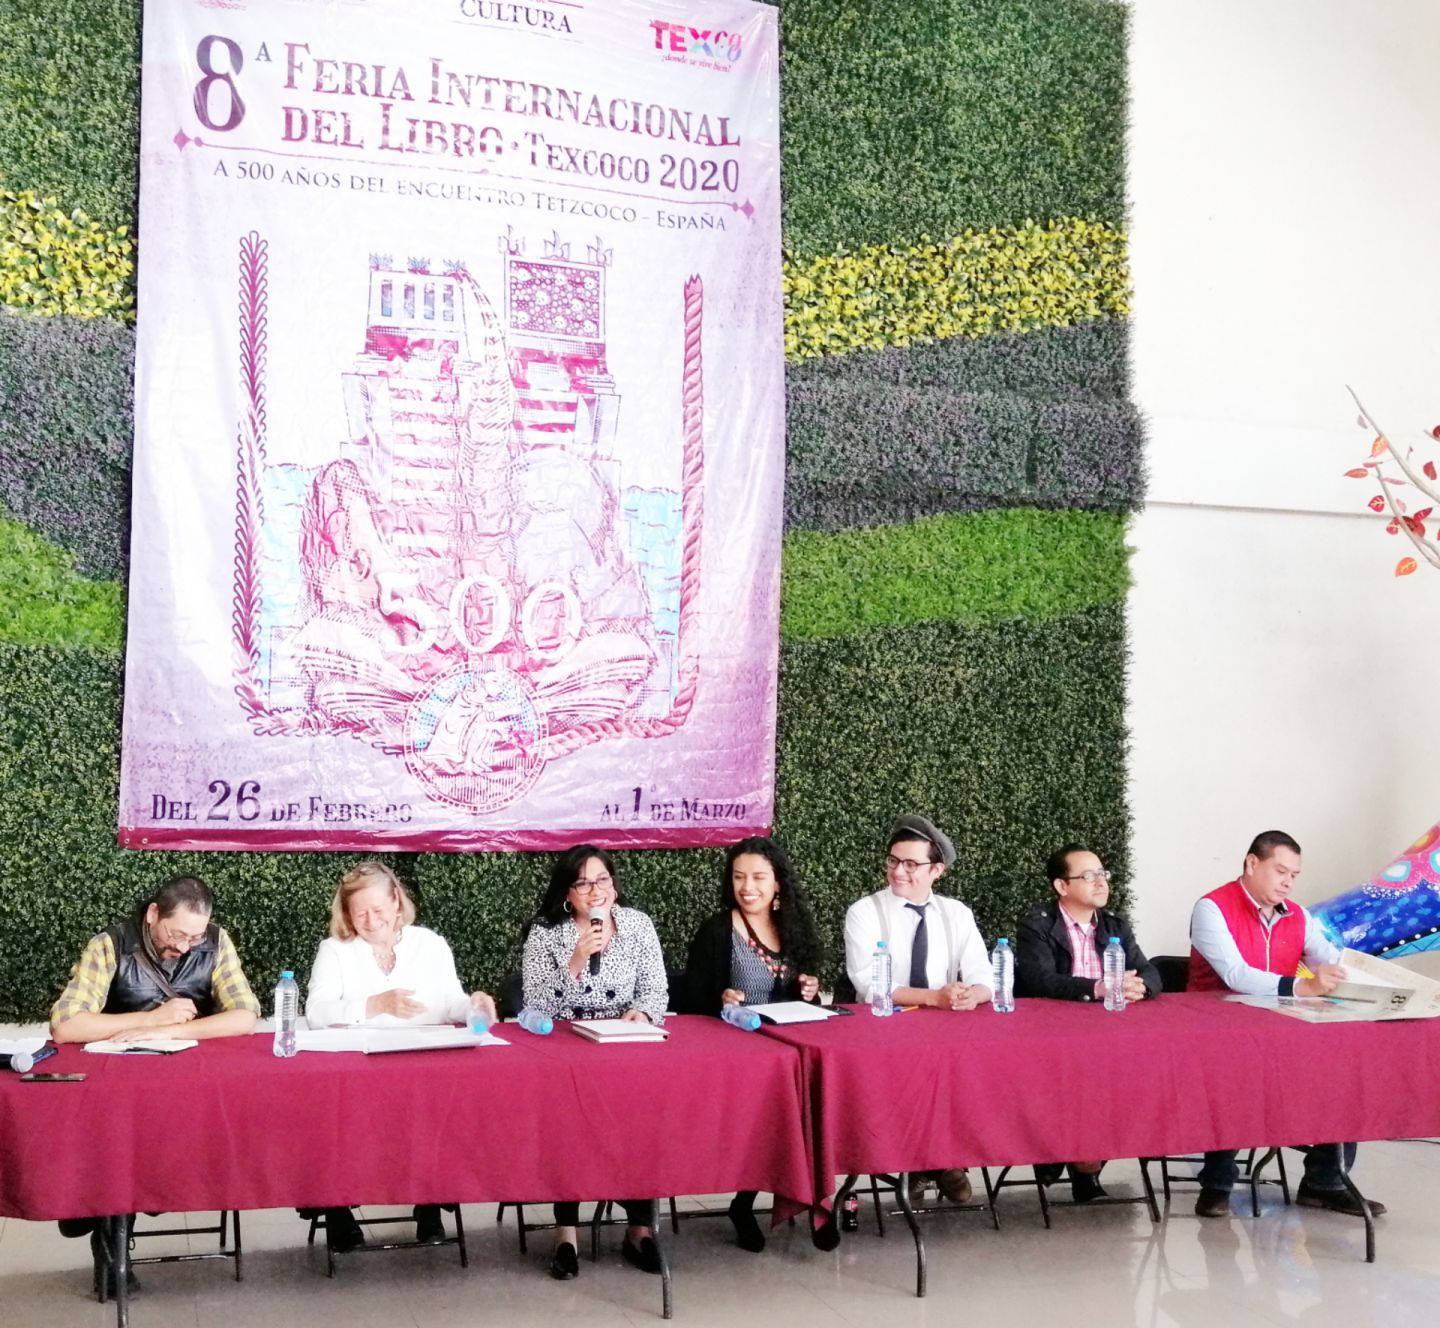 Anuncian La 8ª Feria Internacional del Libro Texcoco 2020